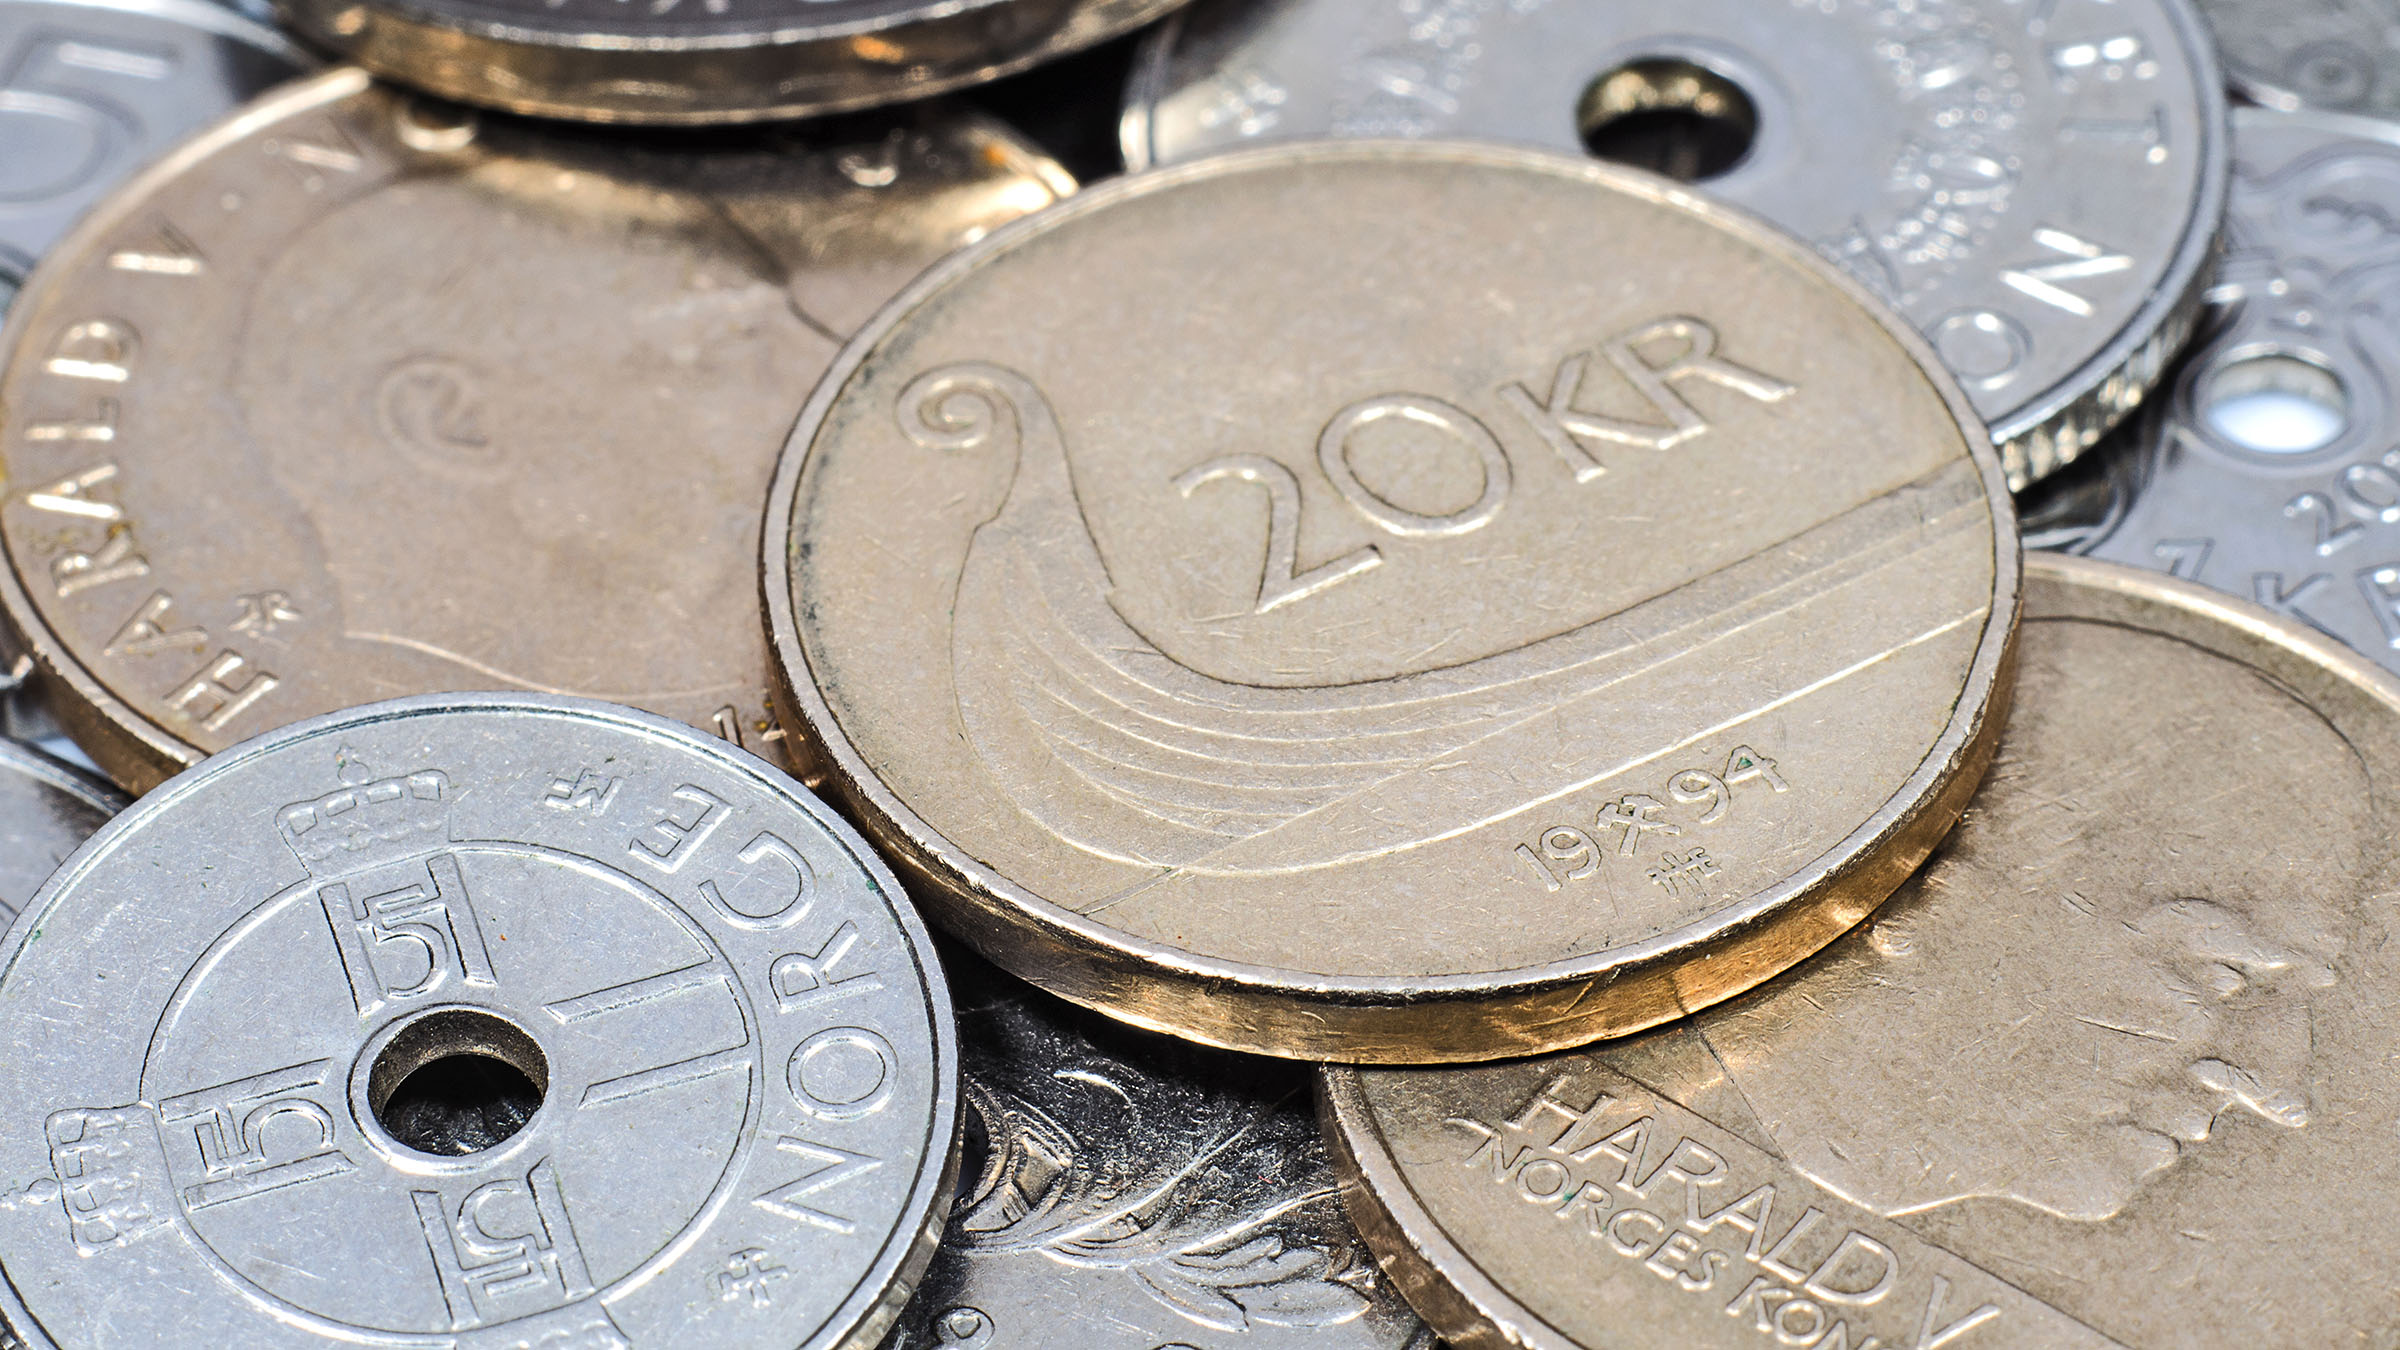 NOU PROJECTE: Moneder amb dispensador de monedes NOK